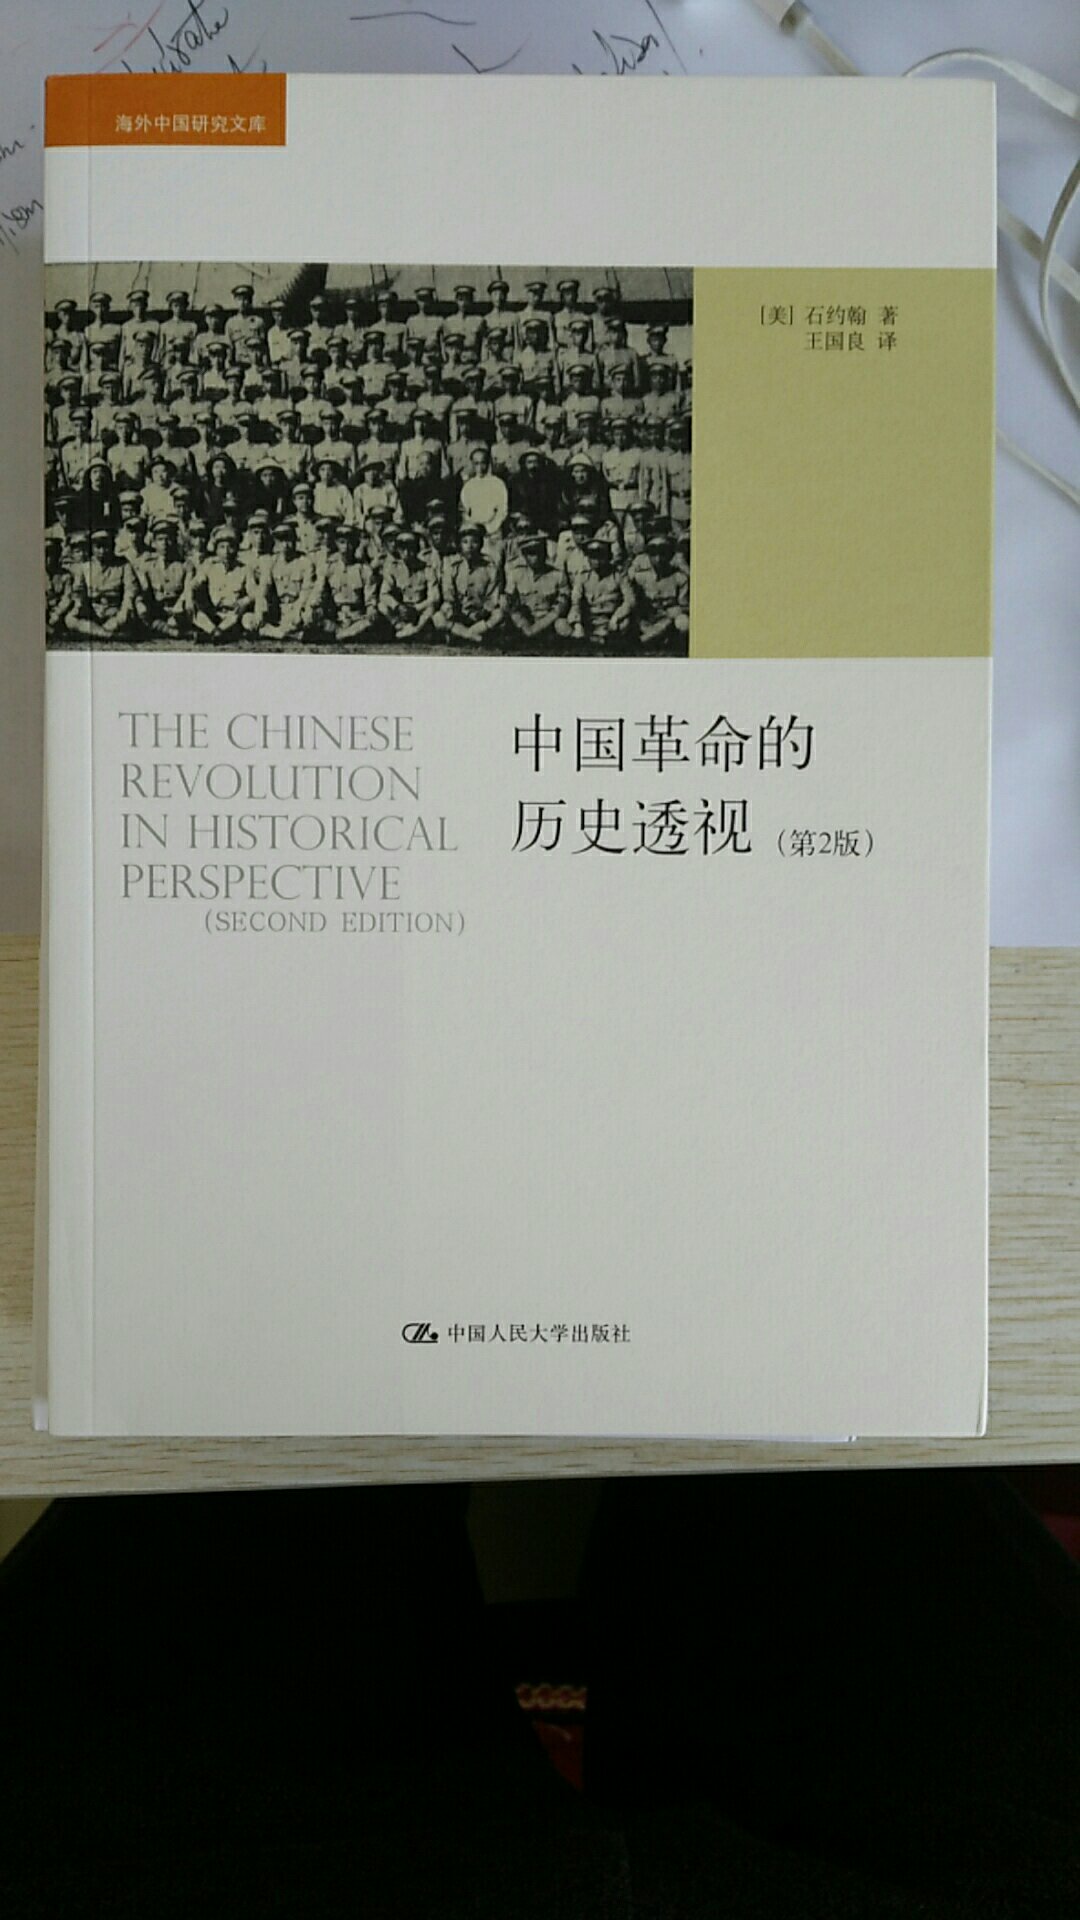 这是一部研究中国革命的力作是研究近代革命的必读之物